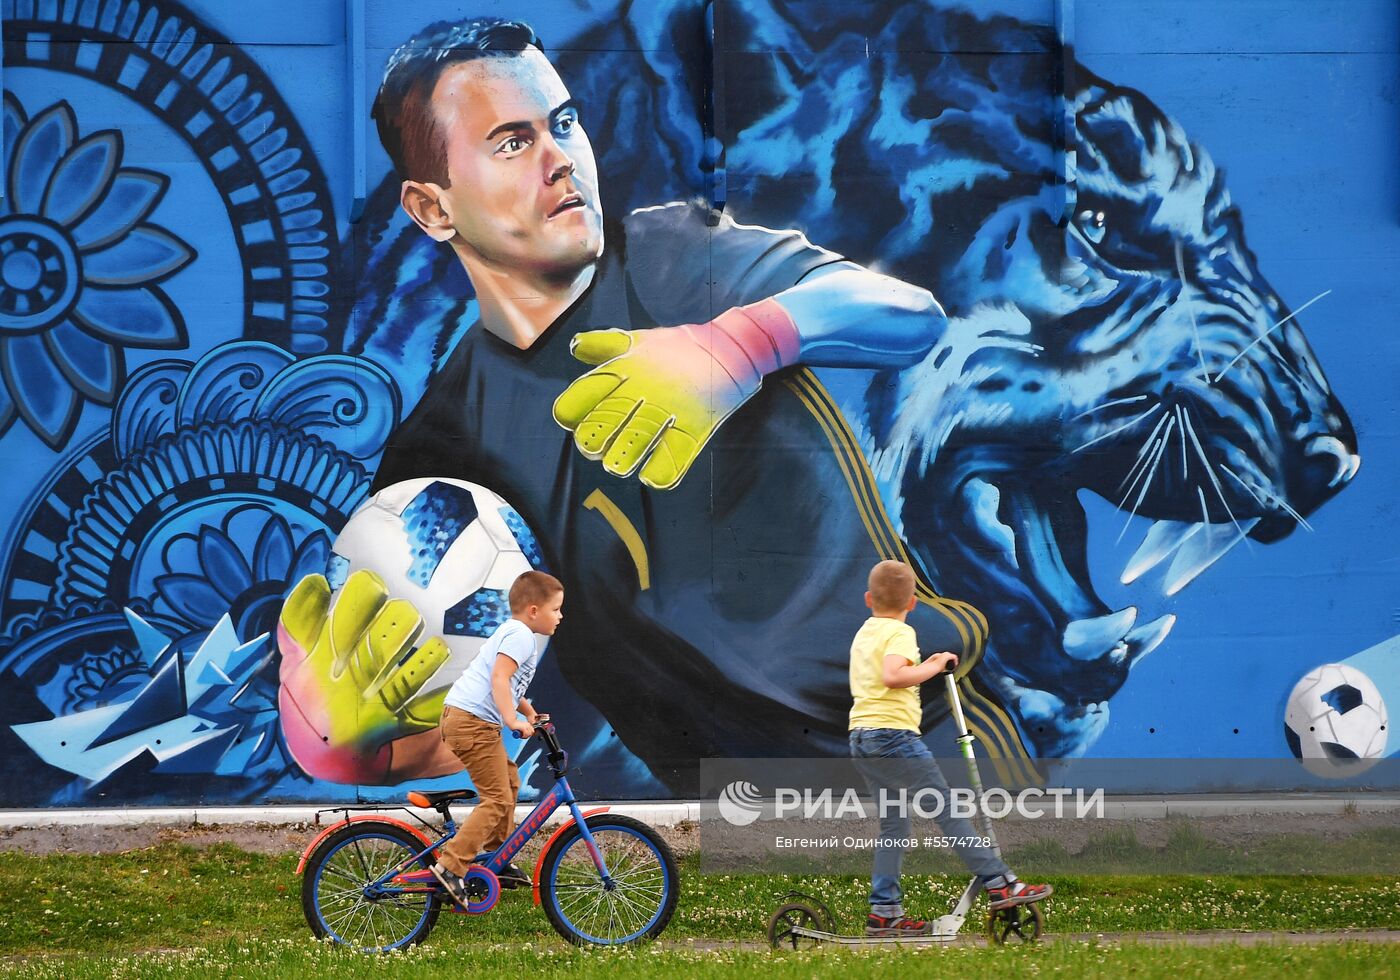 Граффити с изображением вратаря сборной России по футболу И. Акинфеева